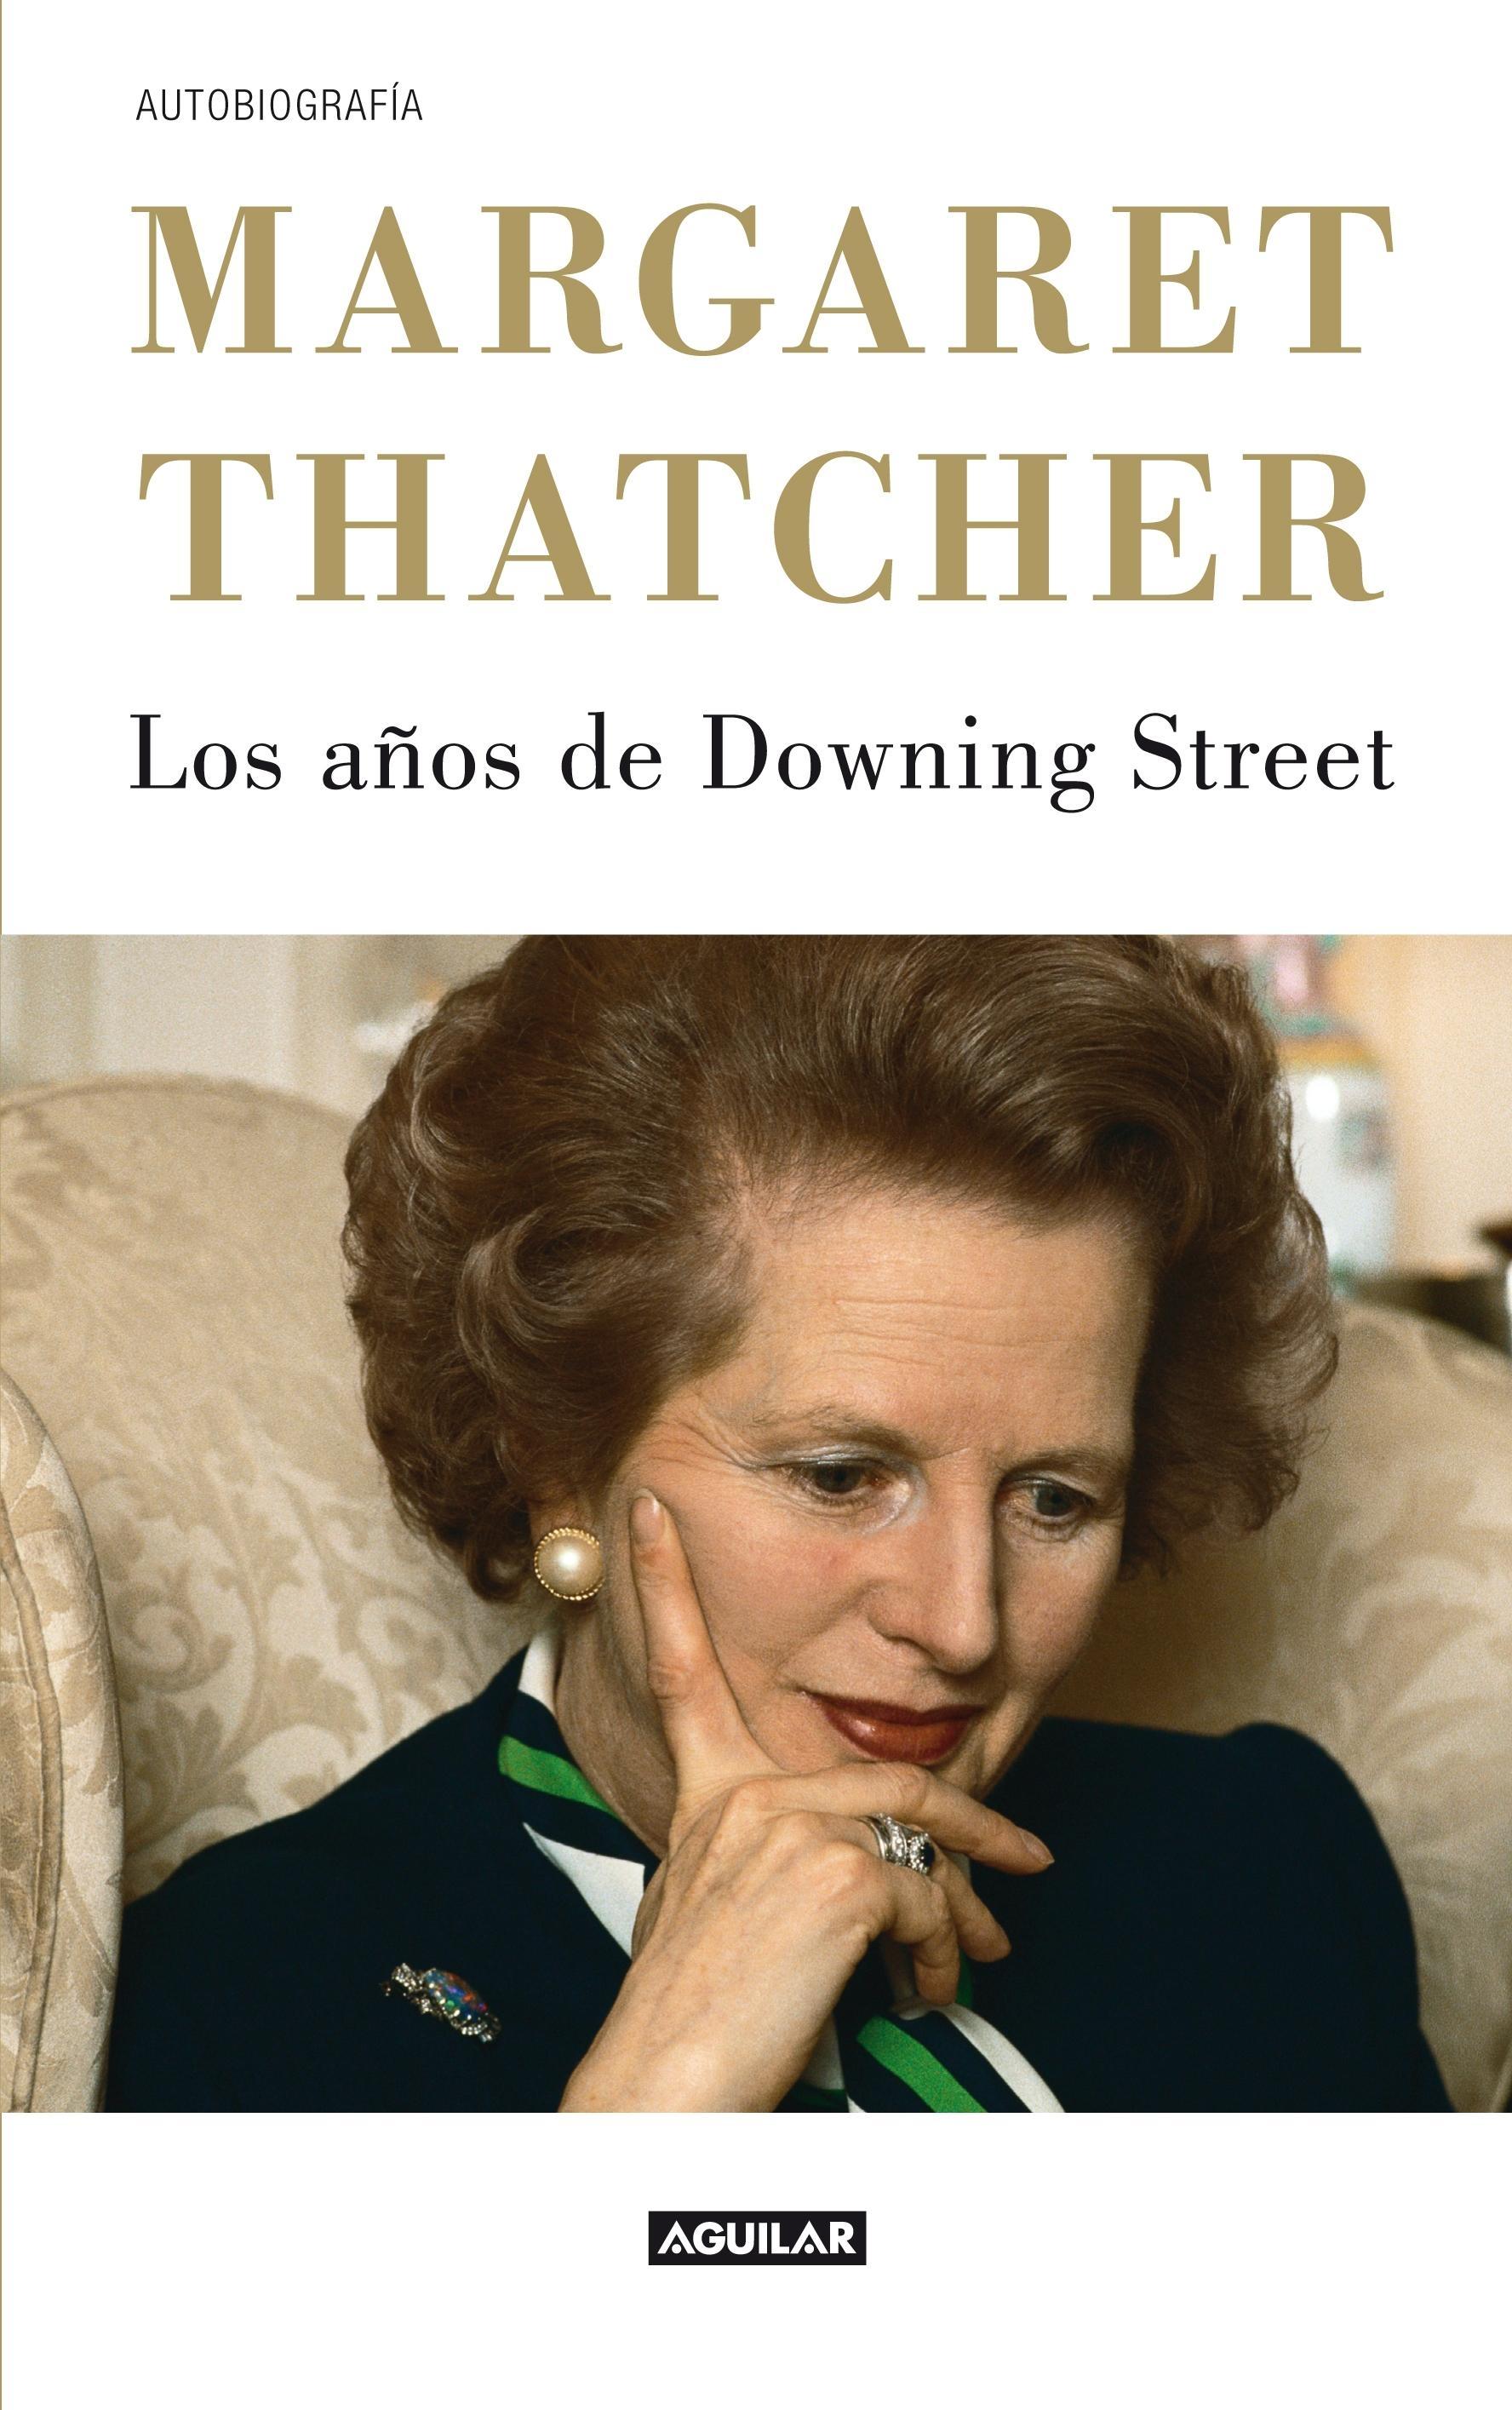 Los años de Downing Street "La autobiografia de la Dama de Hierro"